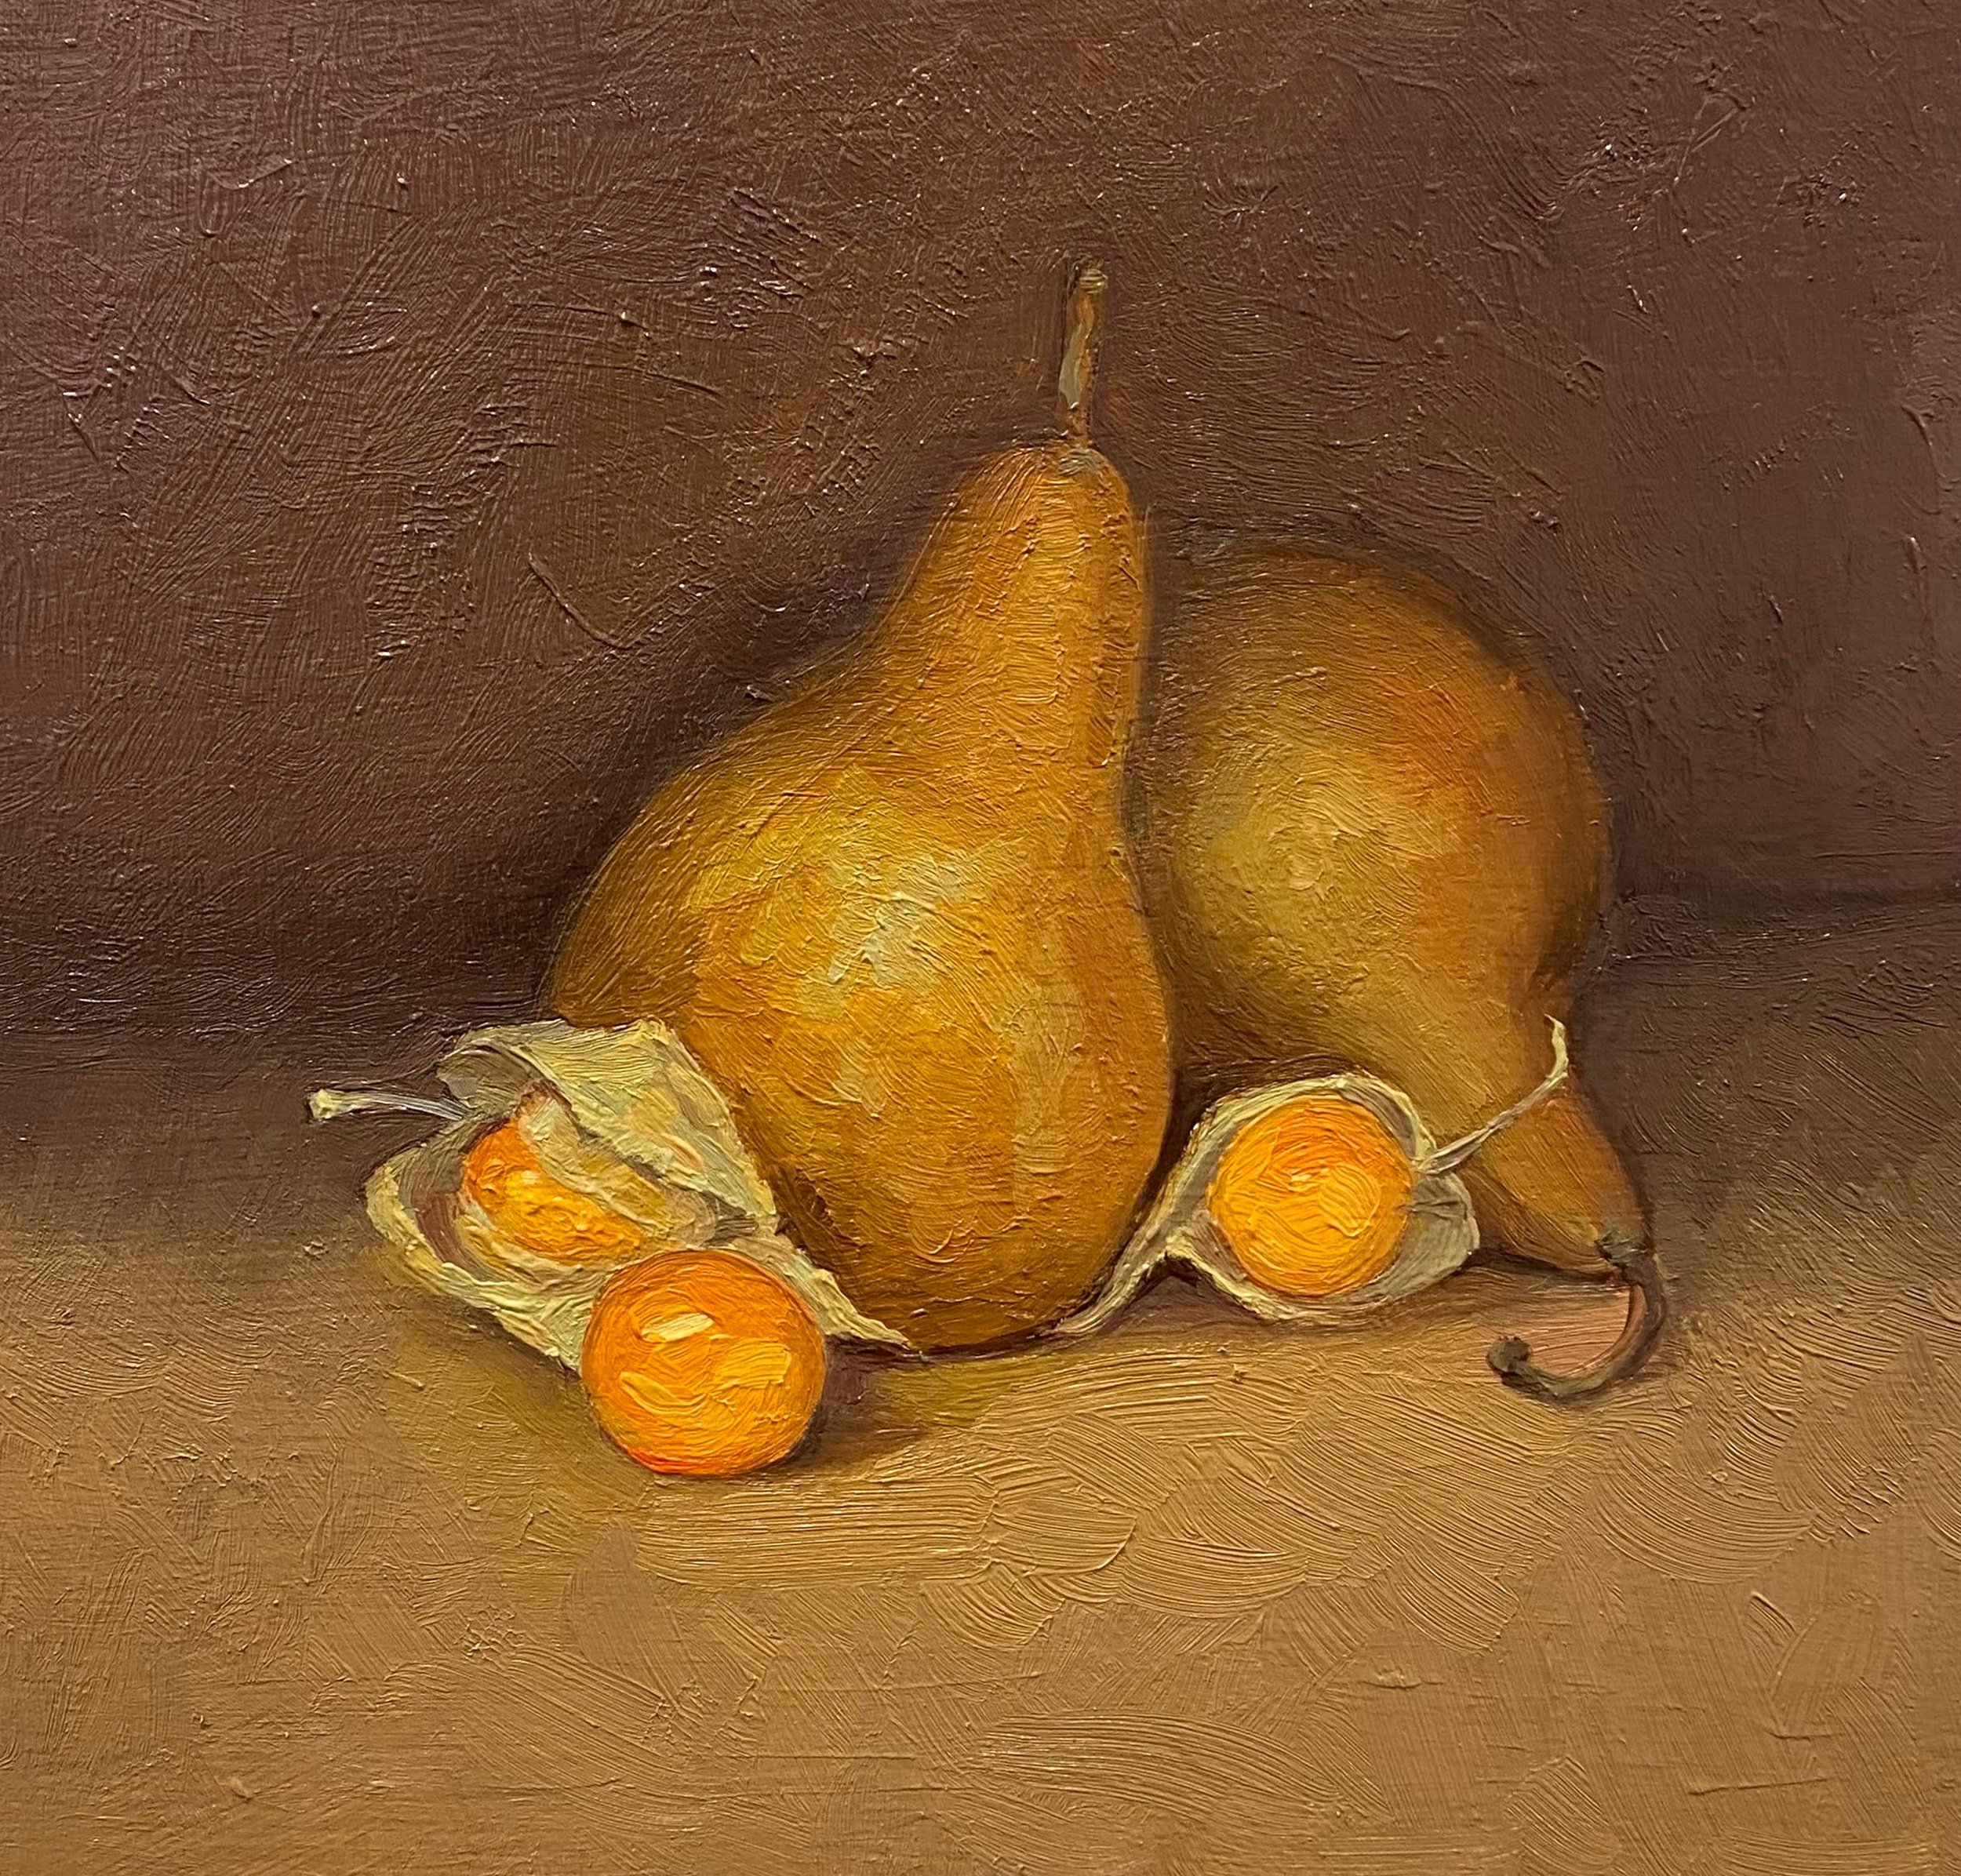 2-Pears and Gooseeberries.jpg